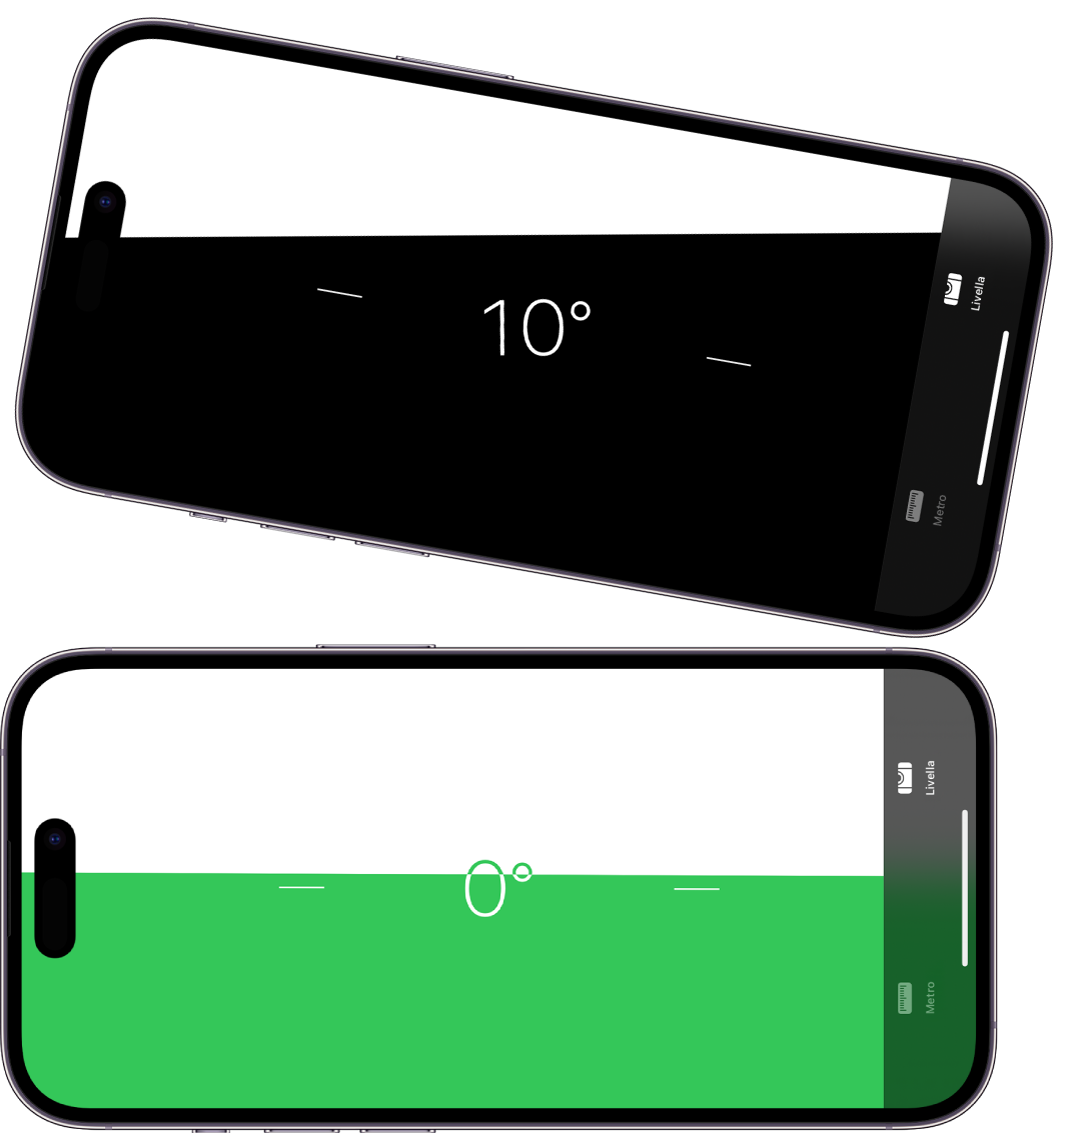 La schermata della livella nell’app Metro. In alto, iPhone presenta un angolo di inclinazione di 10 gradi; in basso, iPhone è in piano.